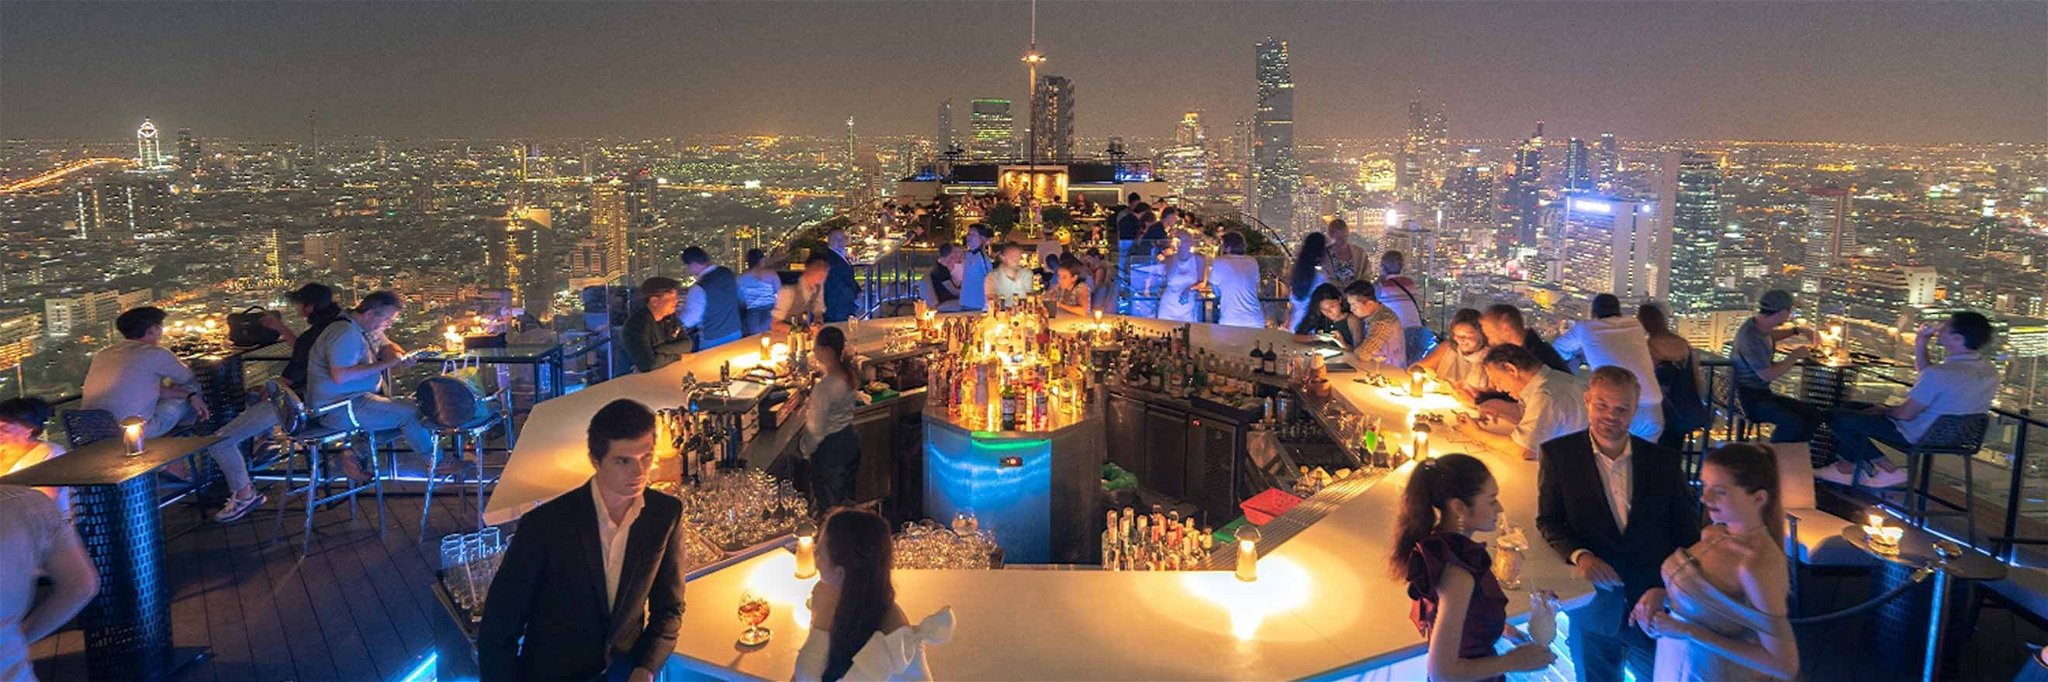 Die Rooftop Bar des Banyan Tree Hotels zählt zu eine der besten in Bangkok.